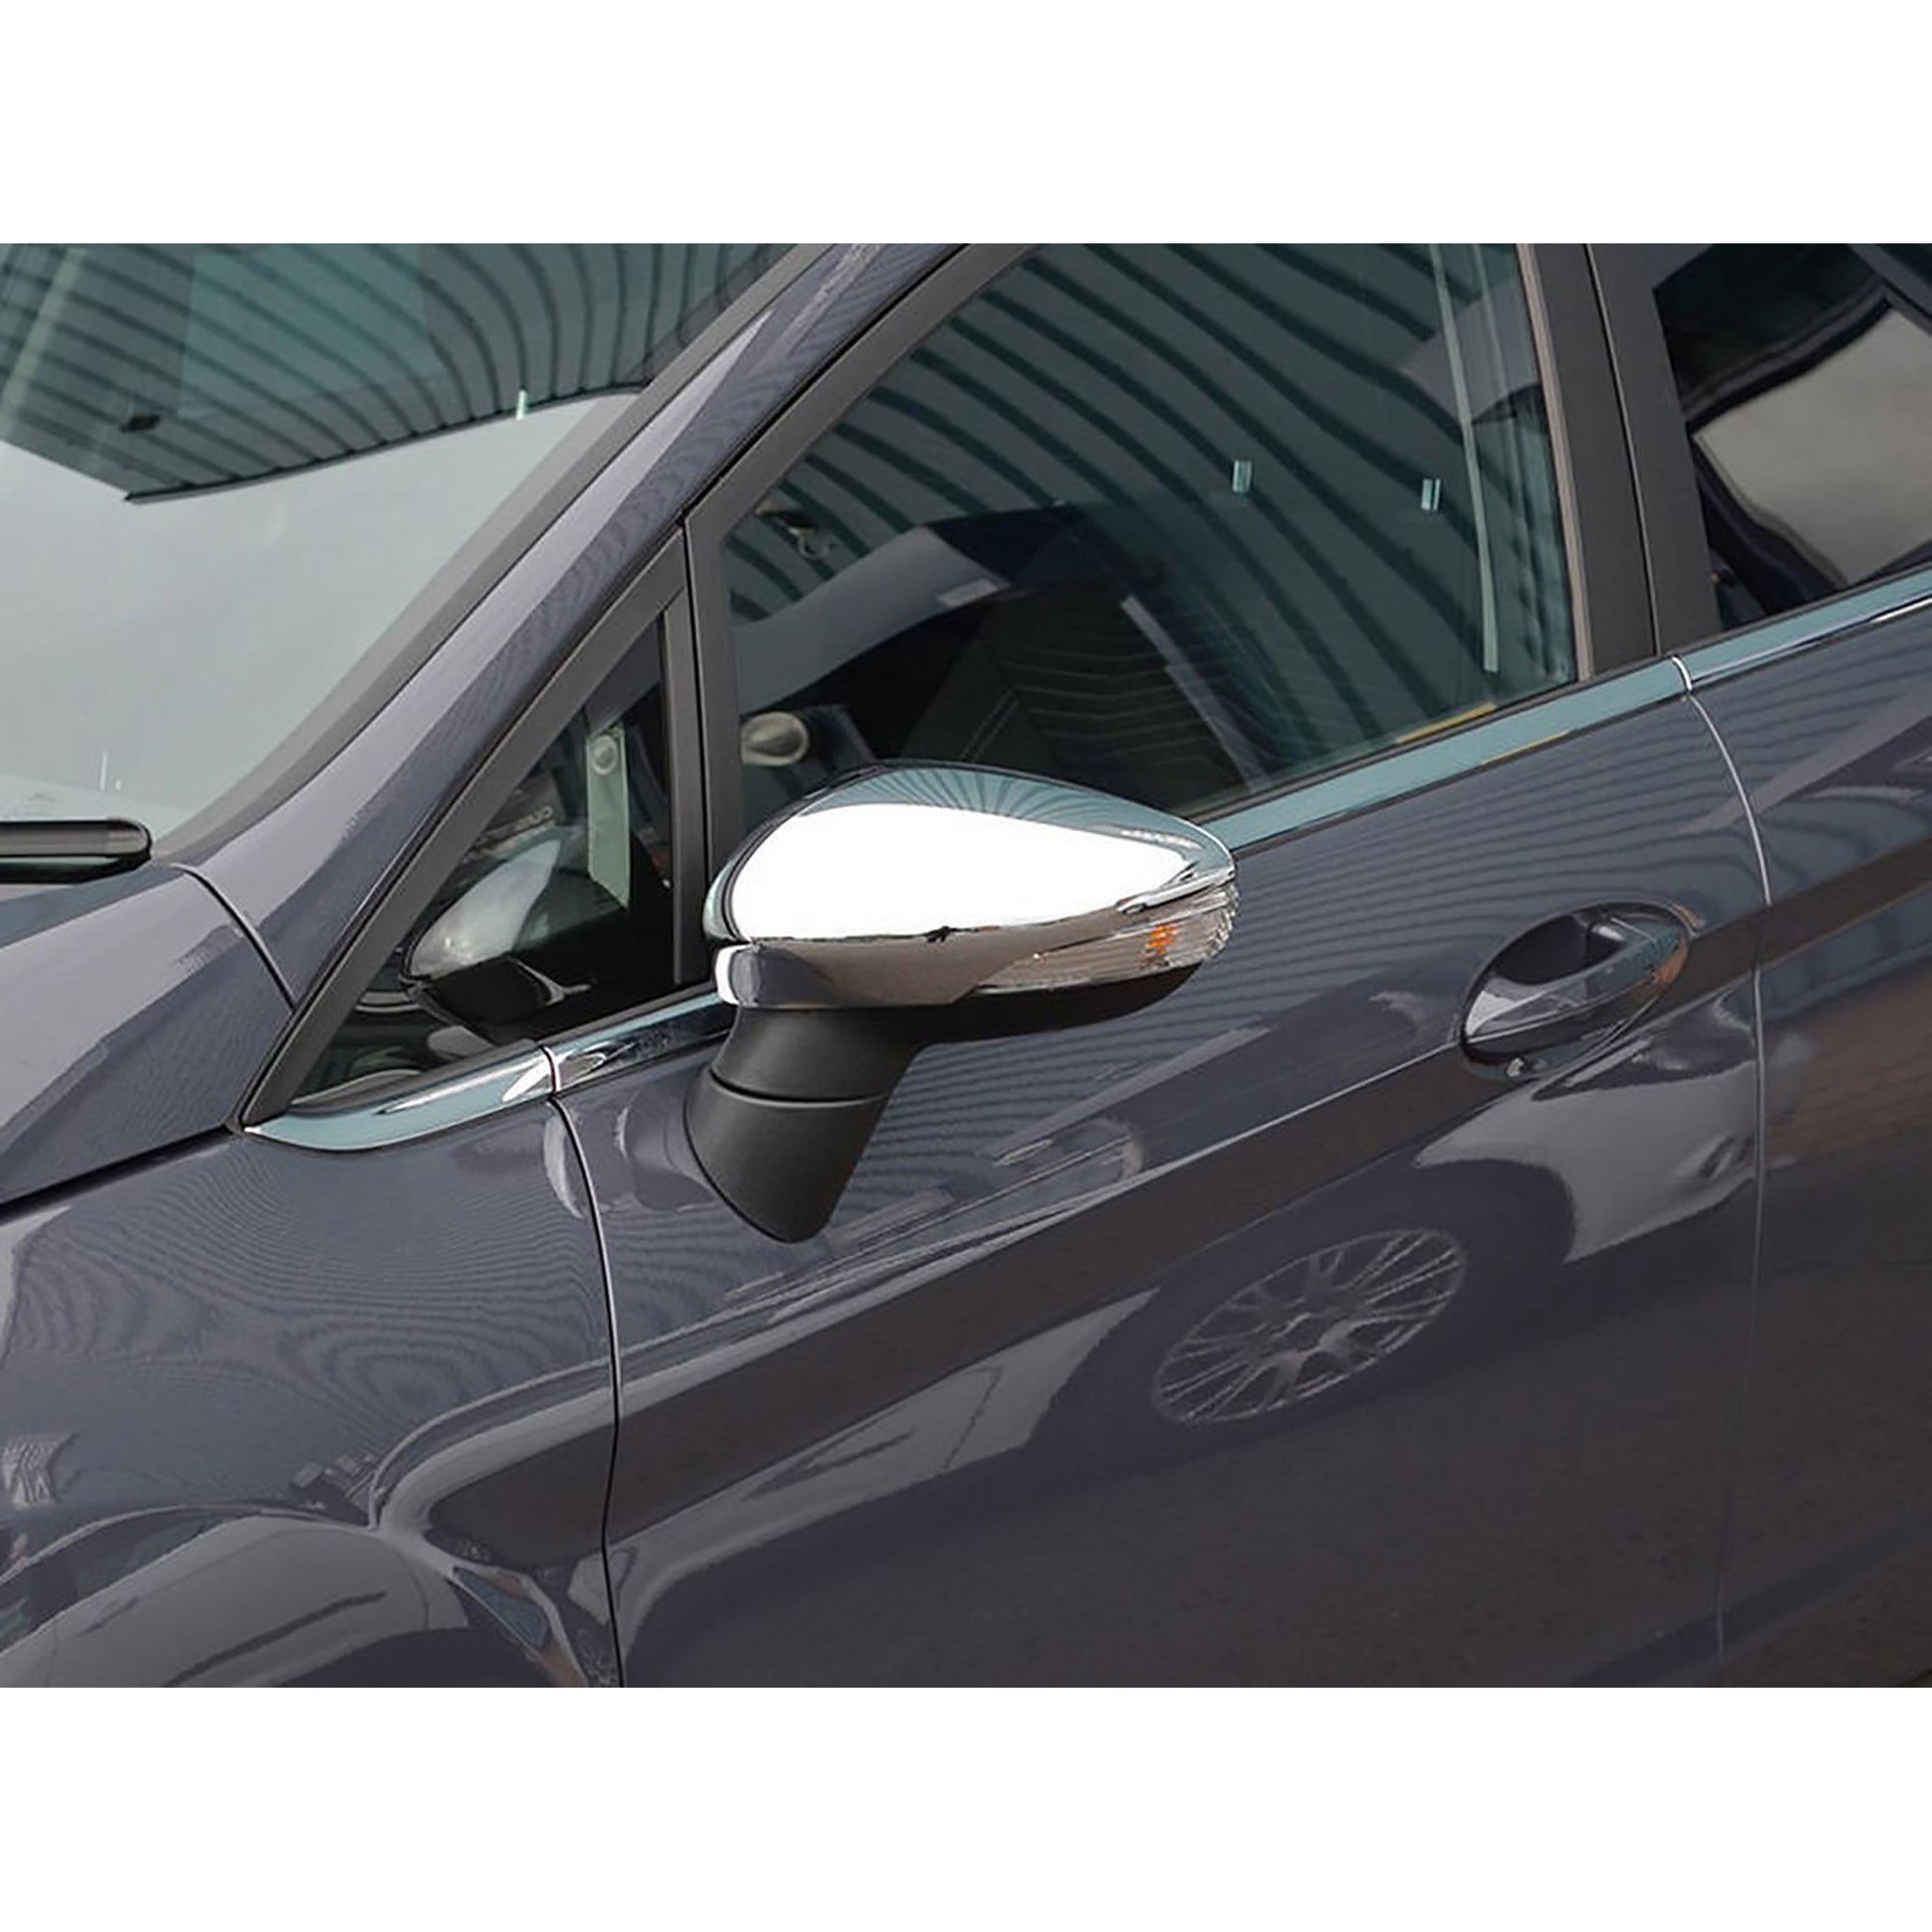 Ford Fiesta Krom Ayna Kapağı Aksesuarları Detaylı Resimleri, Kampanya bilgileri ve fiyatı - 4